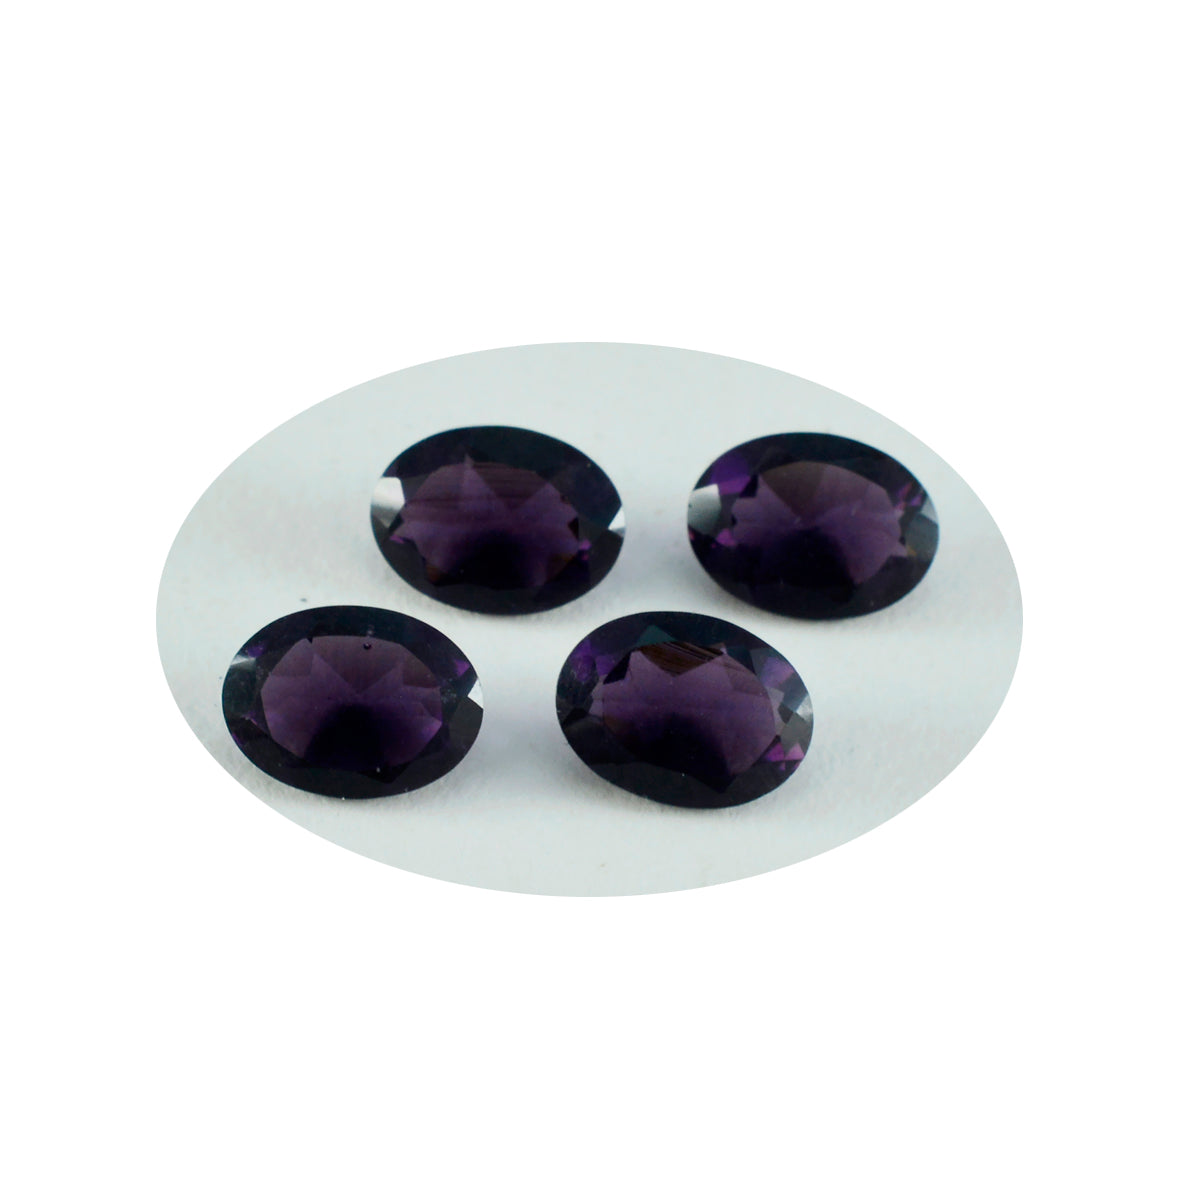 Riyogems 1 Stück violetter Amethyst mit CZ, facettiert, 8 x 10 mm, ovale Form, Edelstein von wunderbarer Qualität